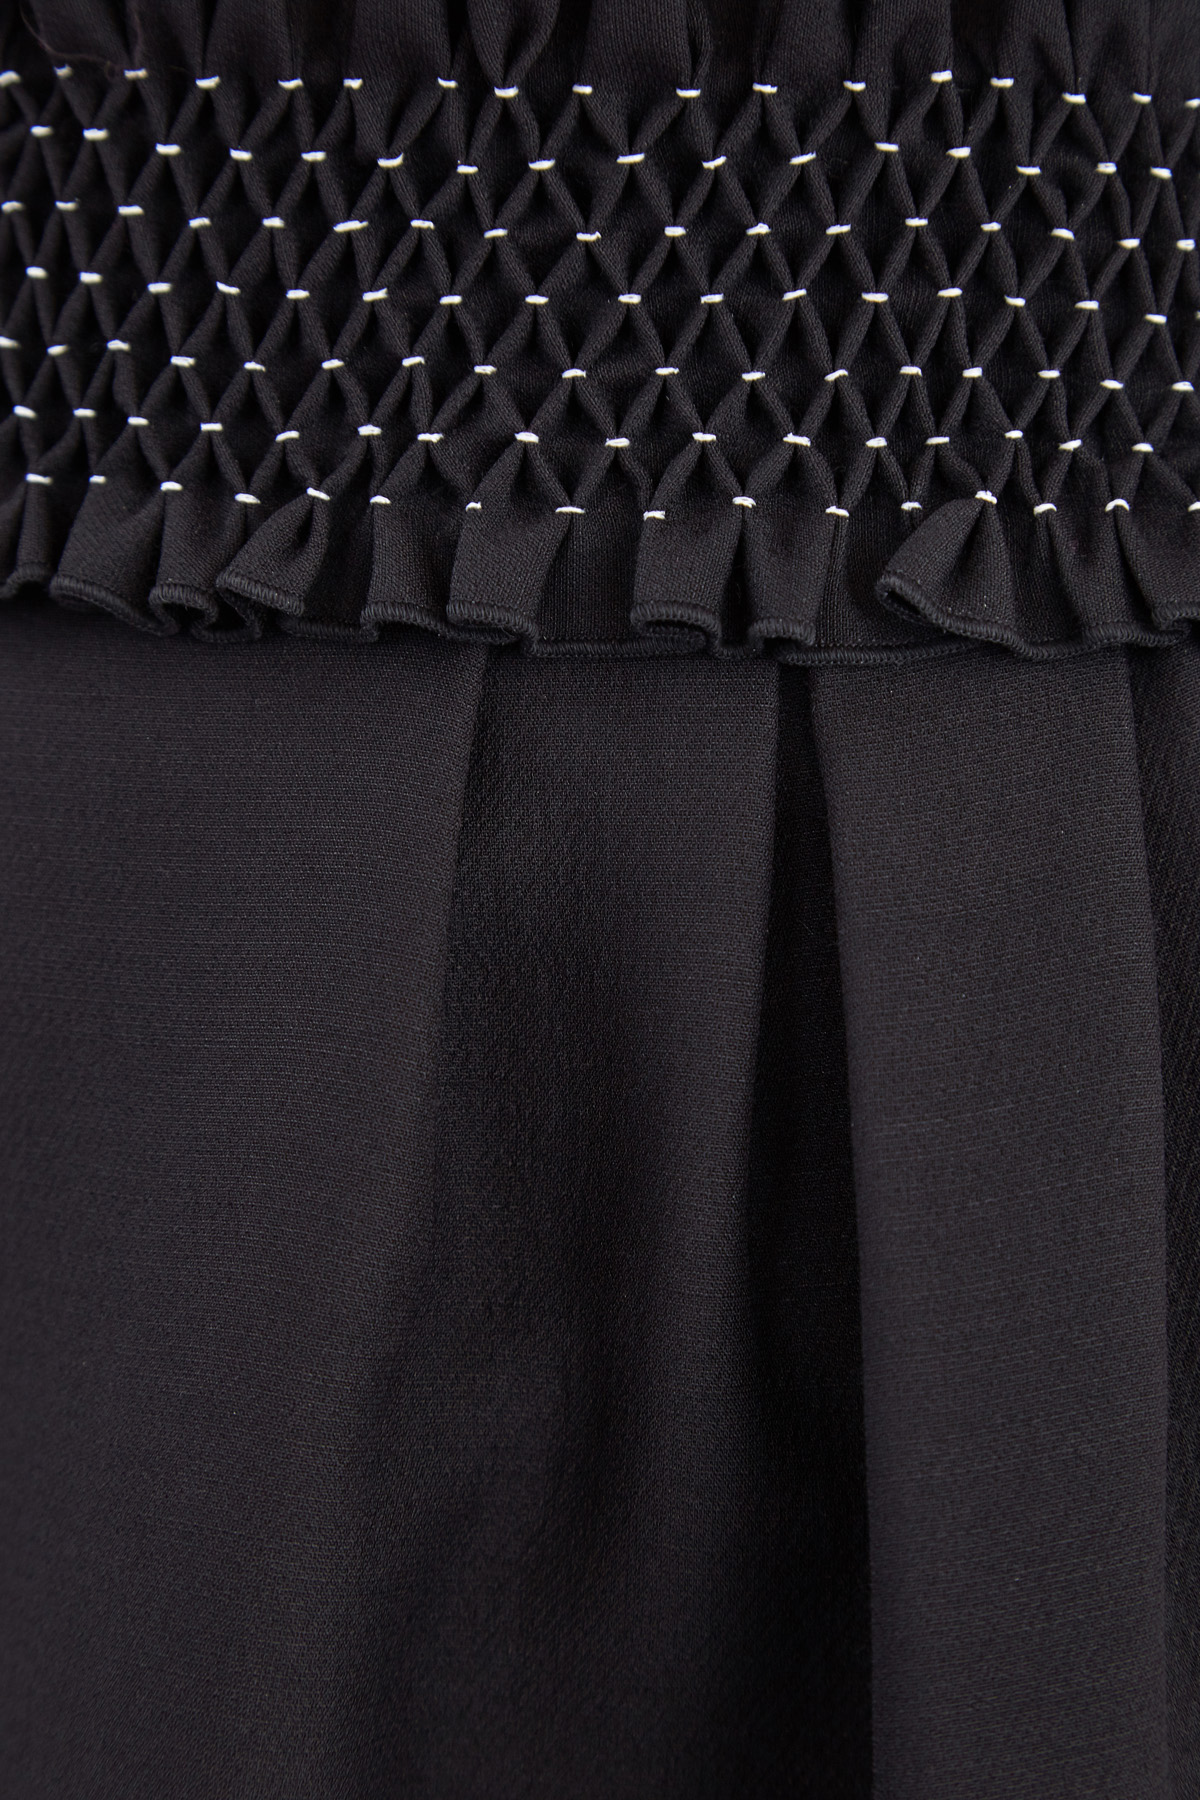 Черная юбка-колокол длины миди с фактурным поясом ручной отделки VALENTINO, цвет черный, размер 42 - фото 5